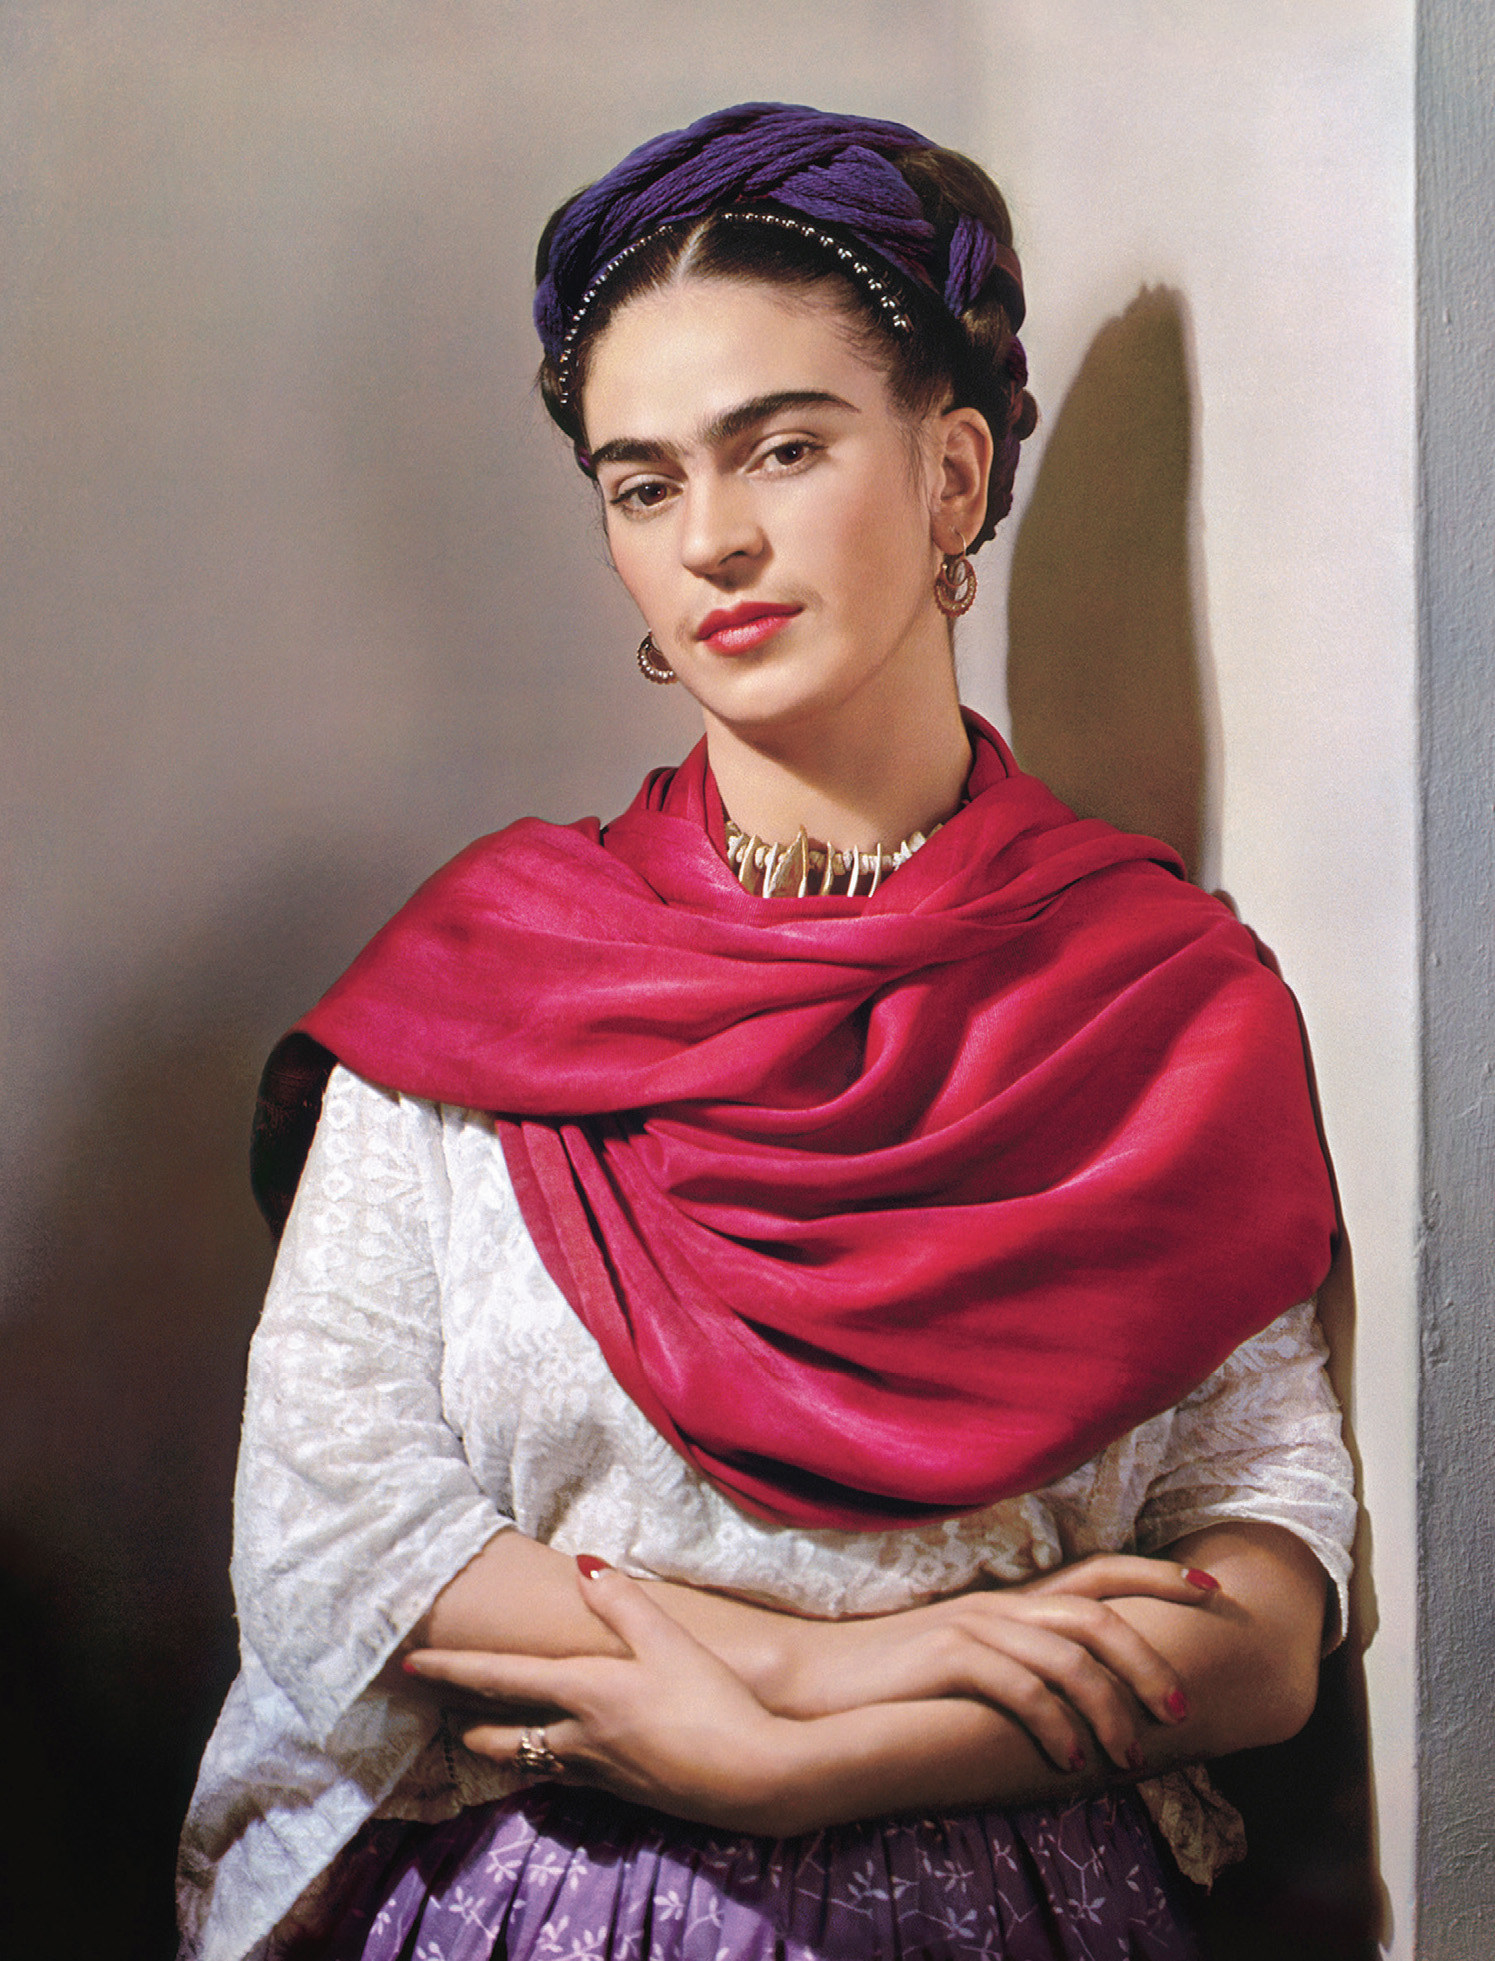 fotos lindas da incrível e difícil vida de Frida Kahlo